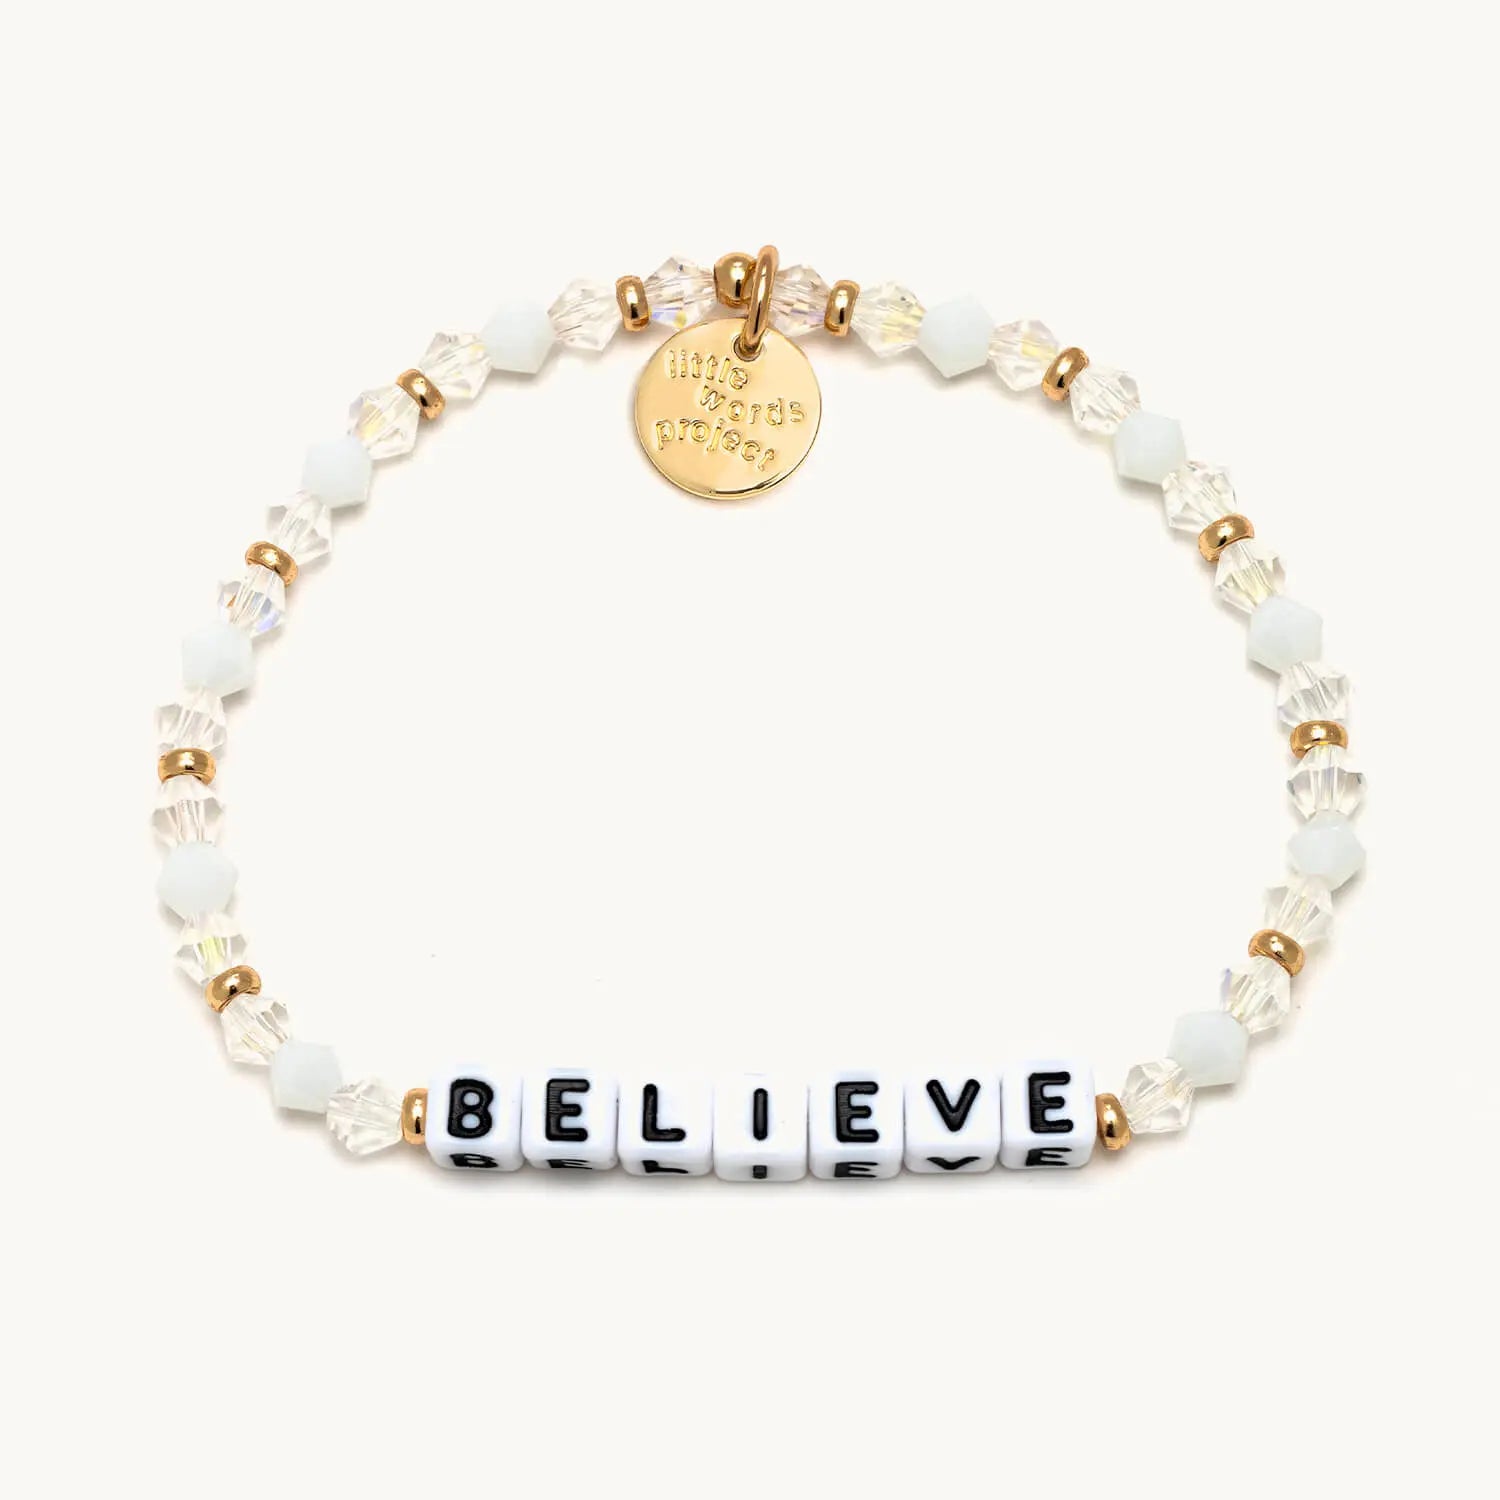 Believe Bracelet - Little Words Project